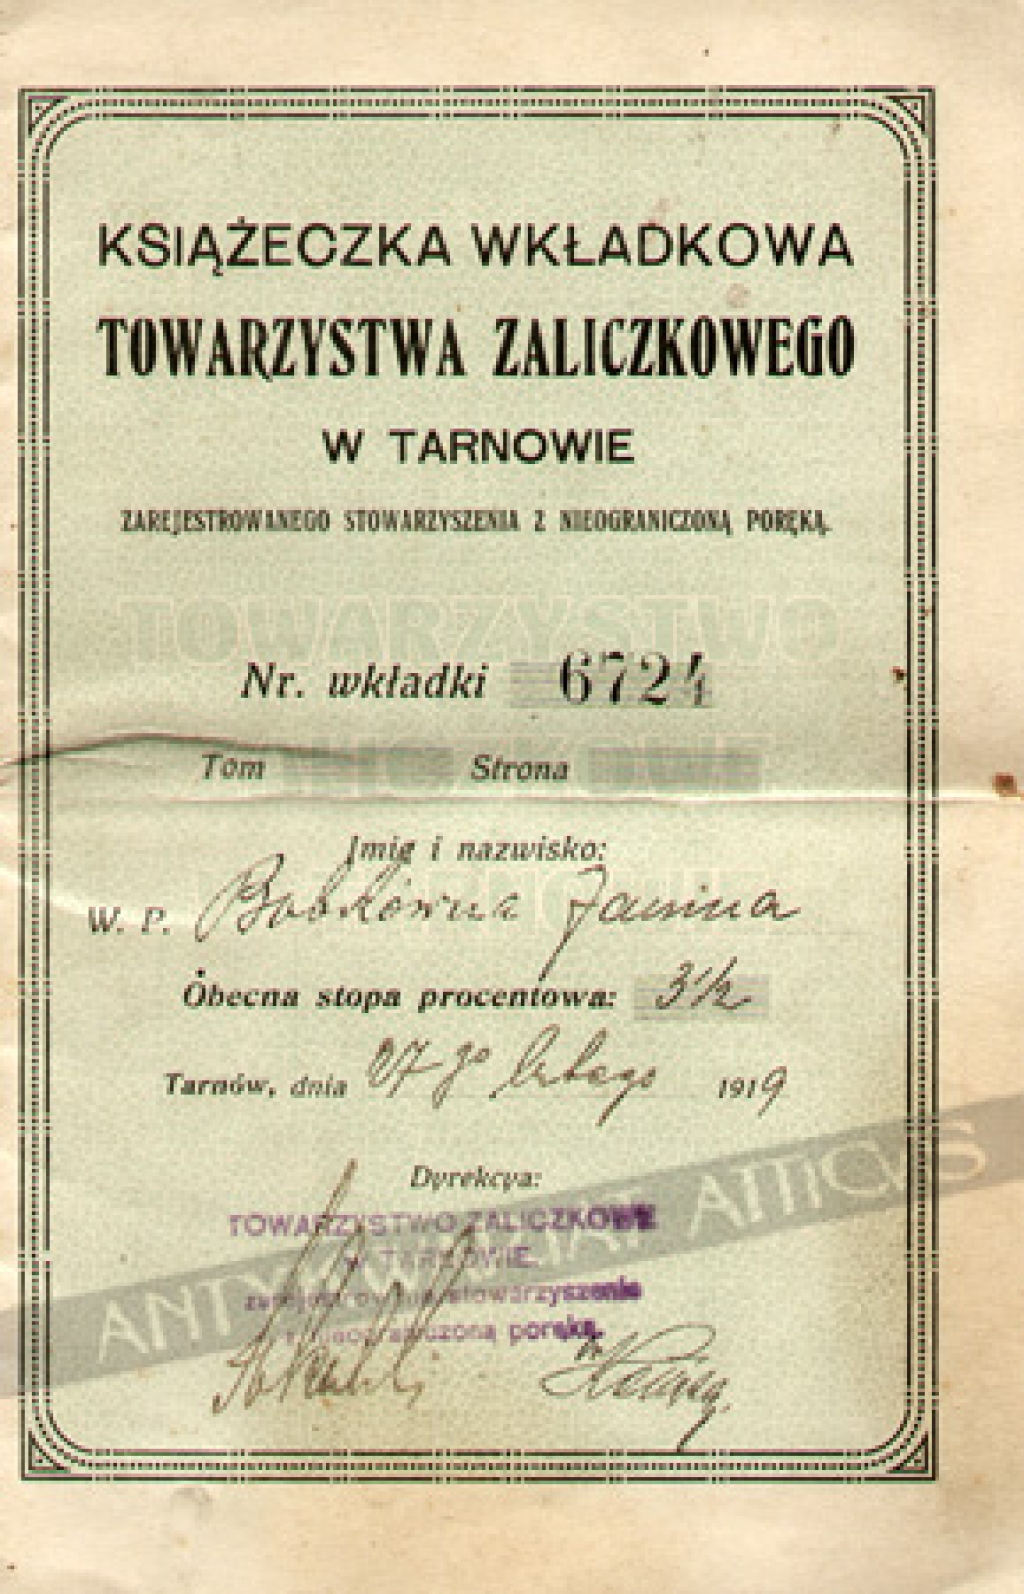 Książeczka wkładkowa Towarzystwa Zaliczkowego w Tarnowie zarejestrowanego stowarzyszenia z nieograniczoną poręką